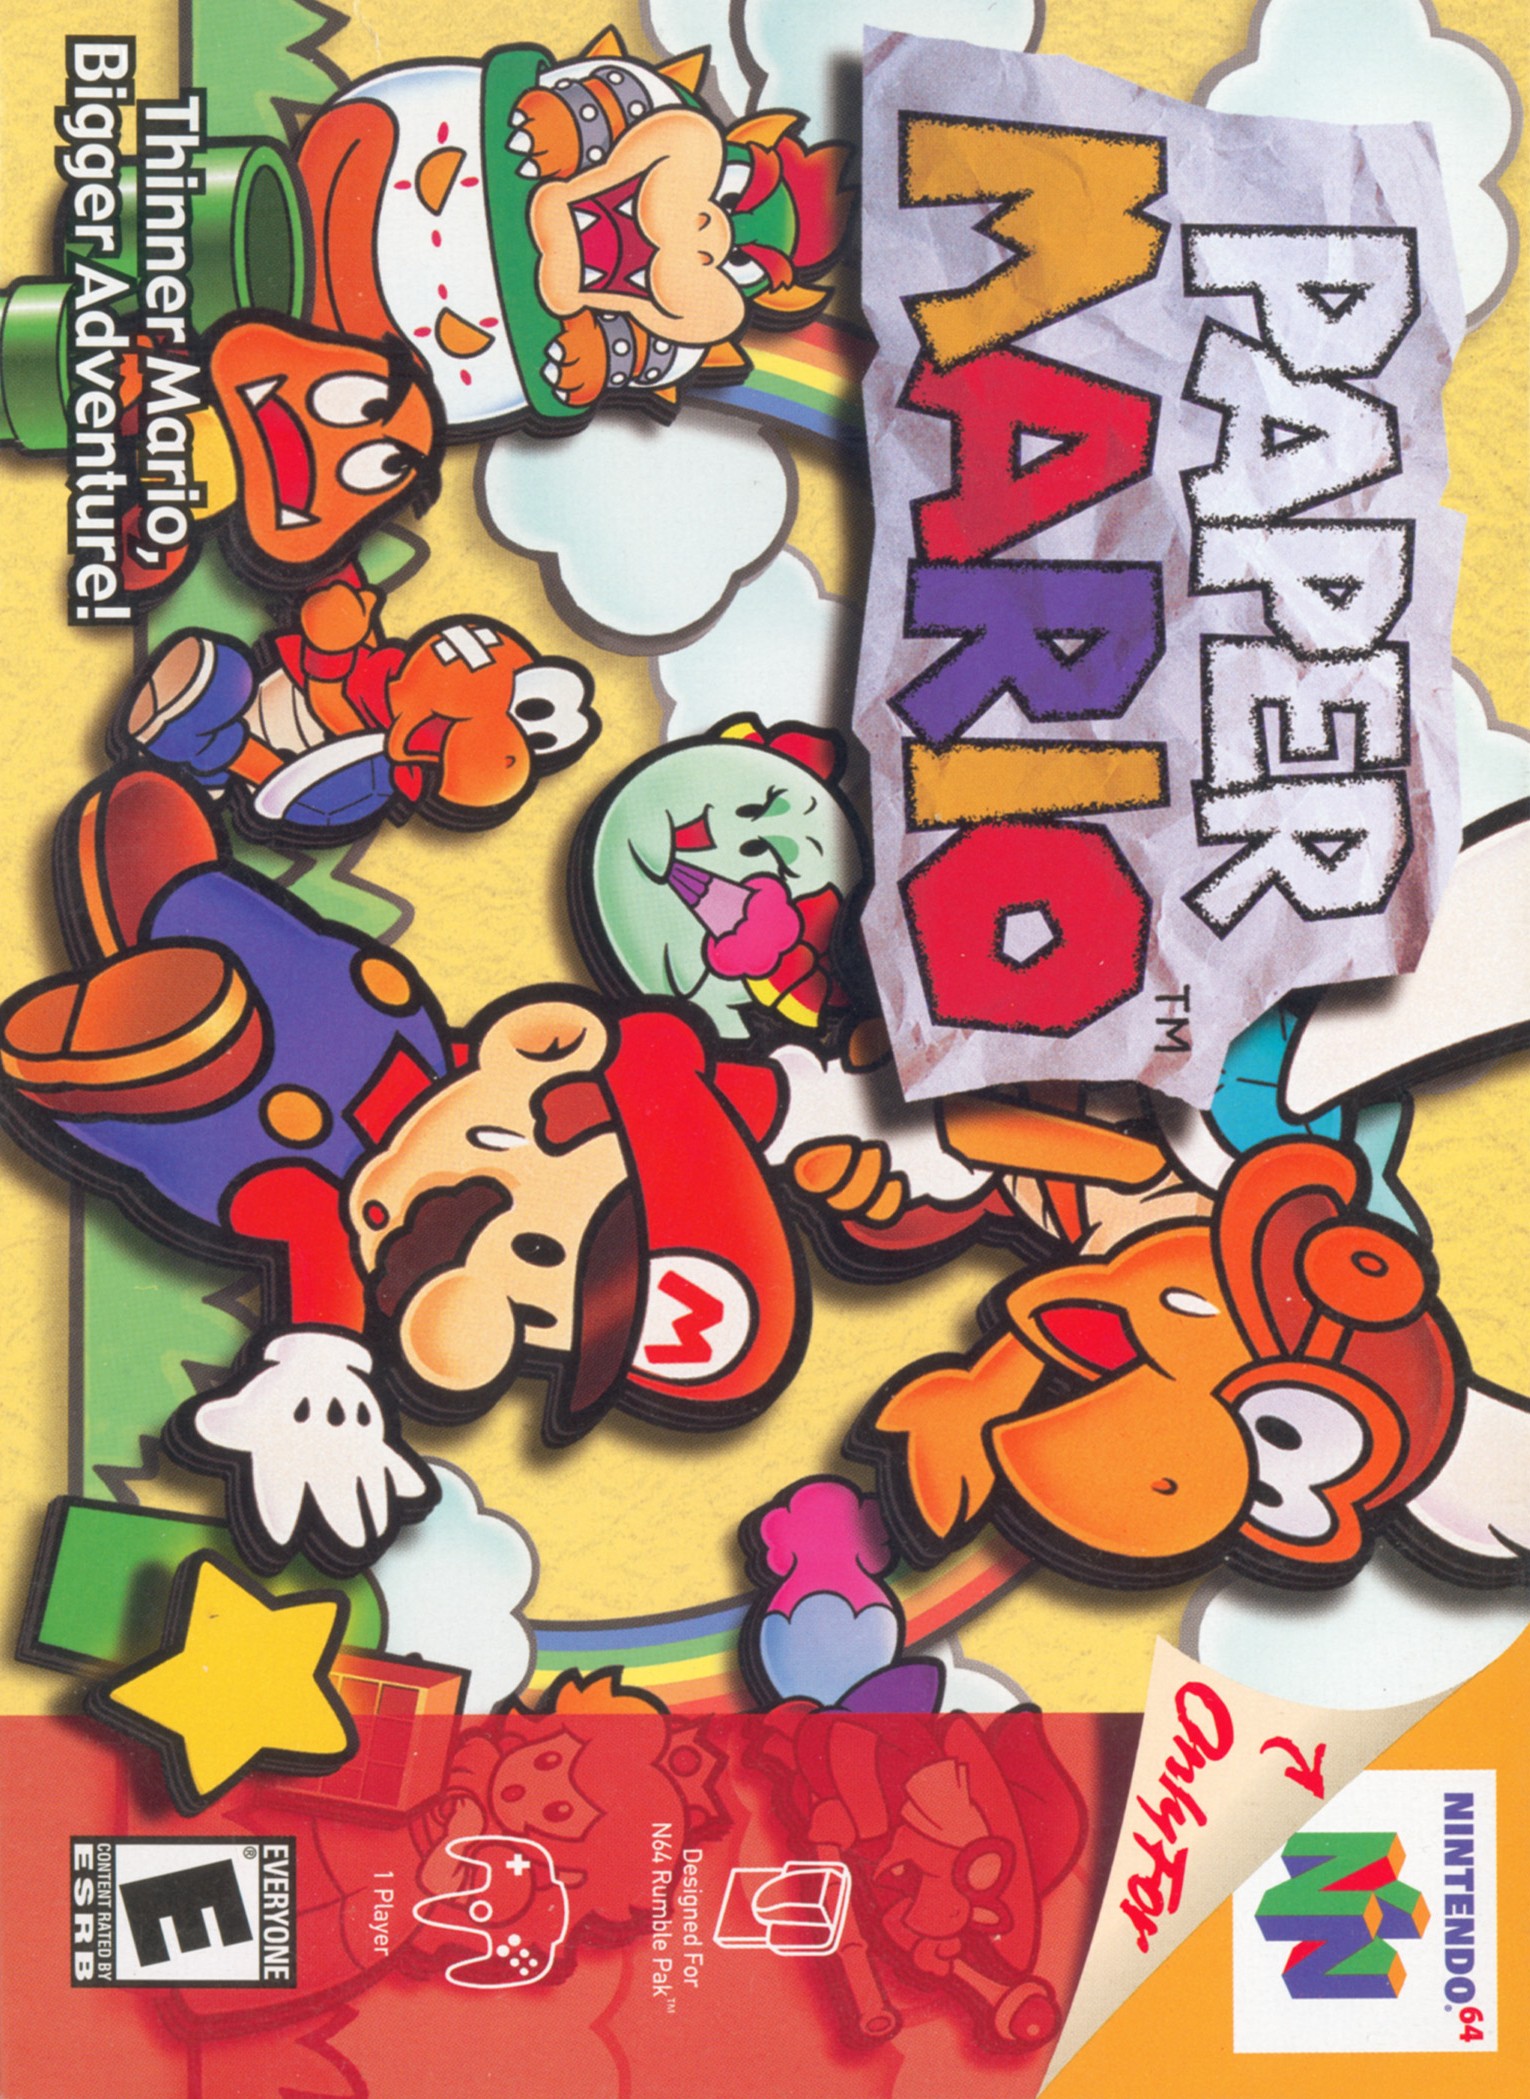 'Paper Mario'